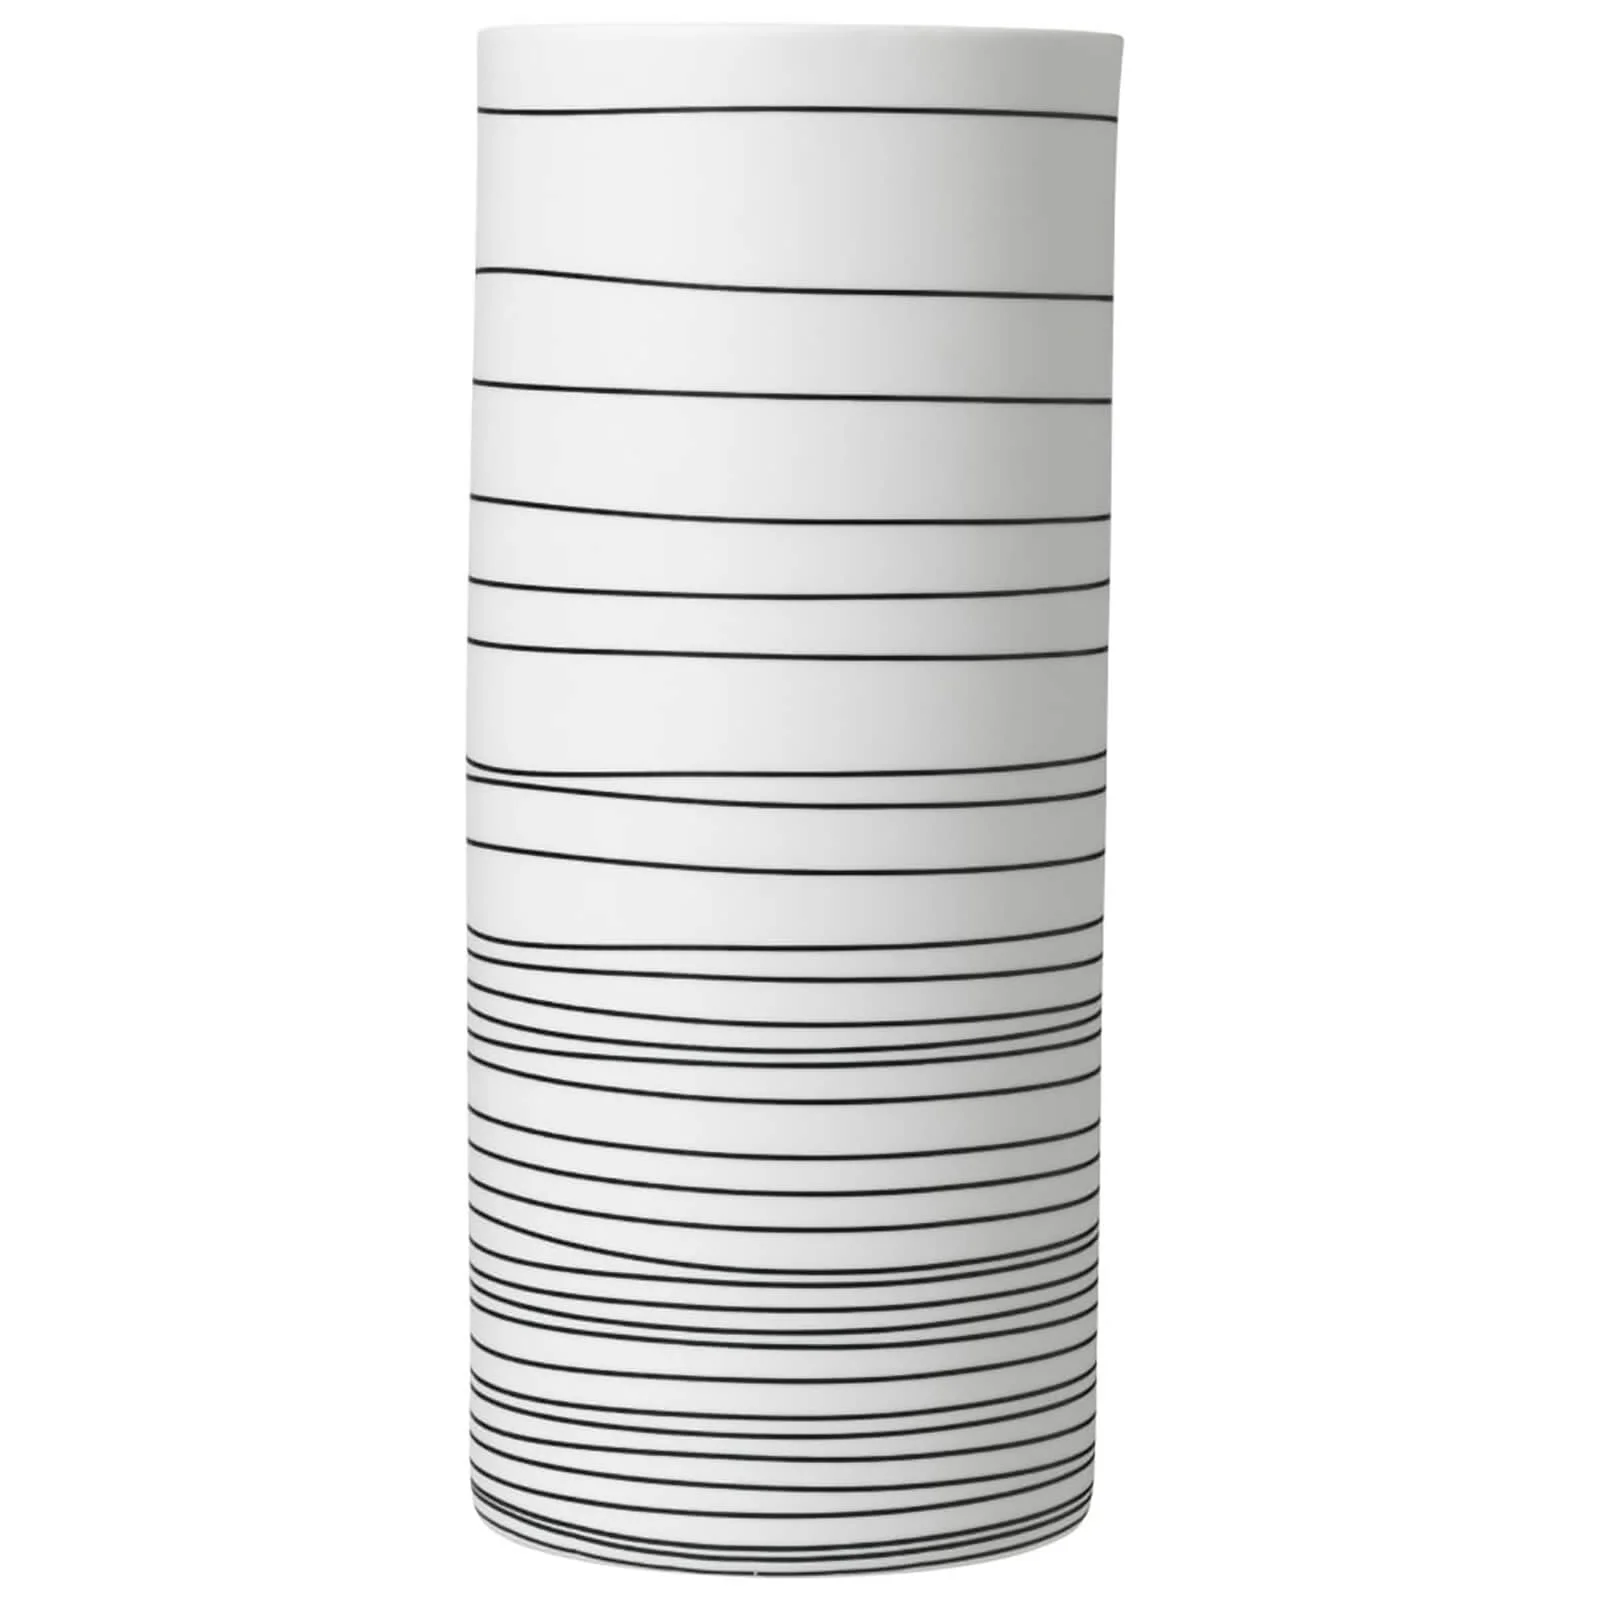 Blomus Zebra Vase - Medium Image 1